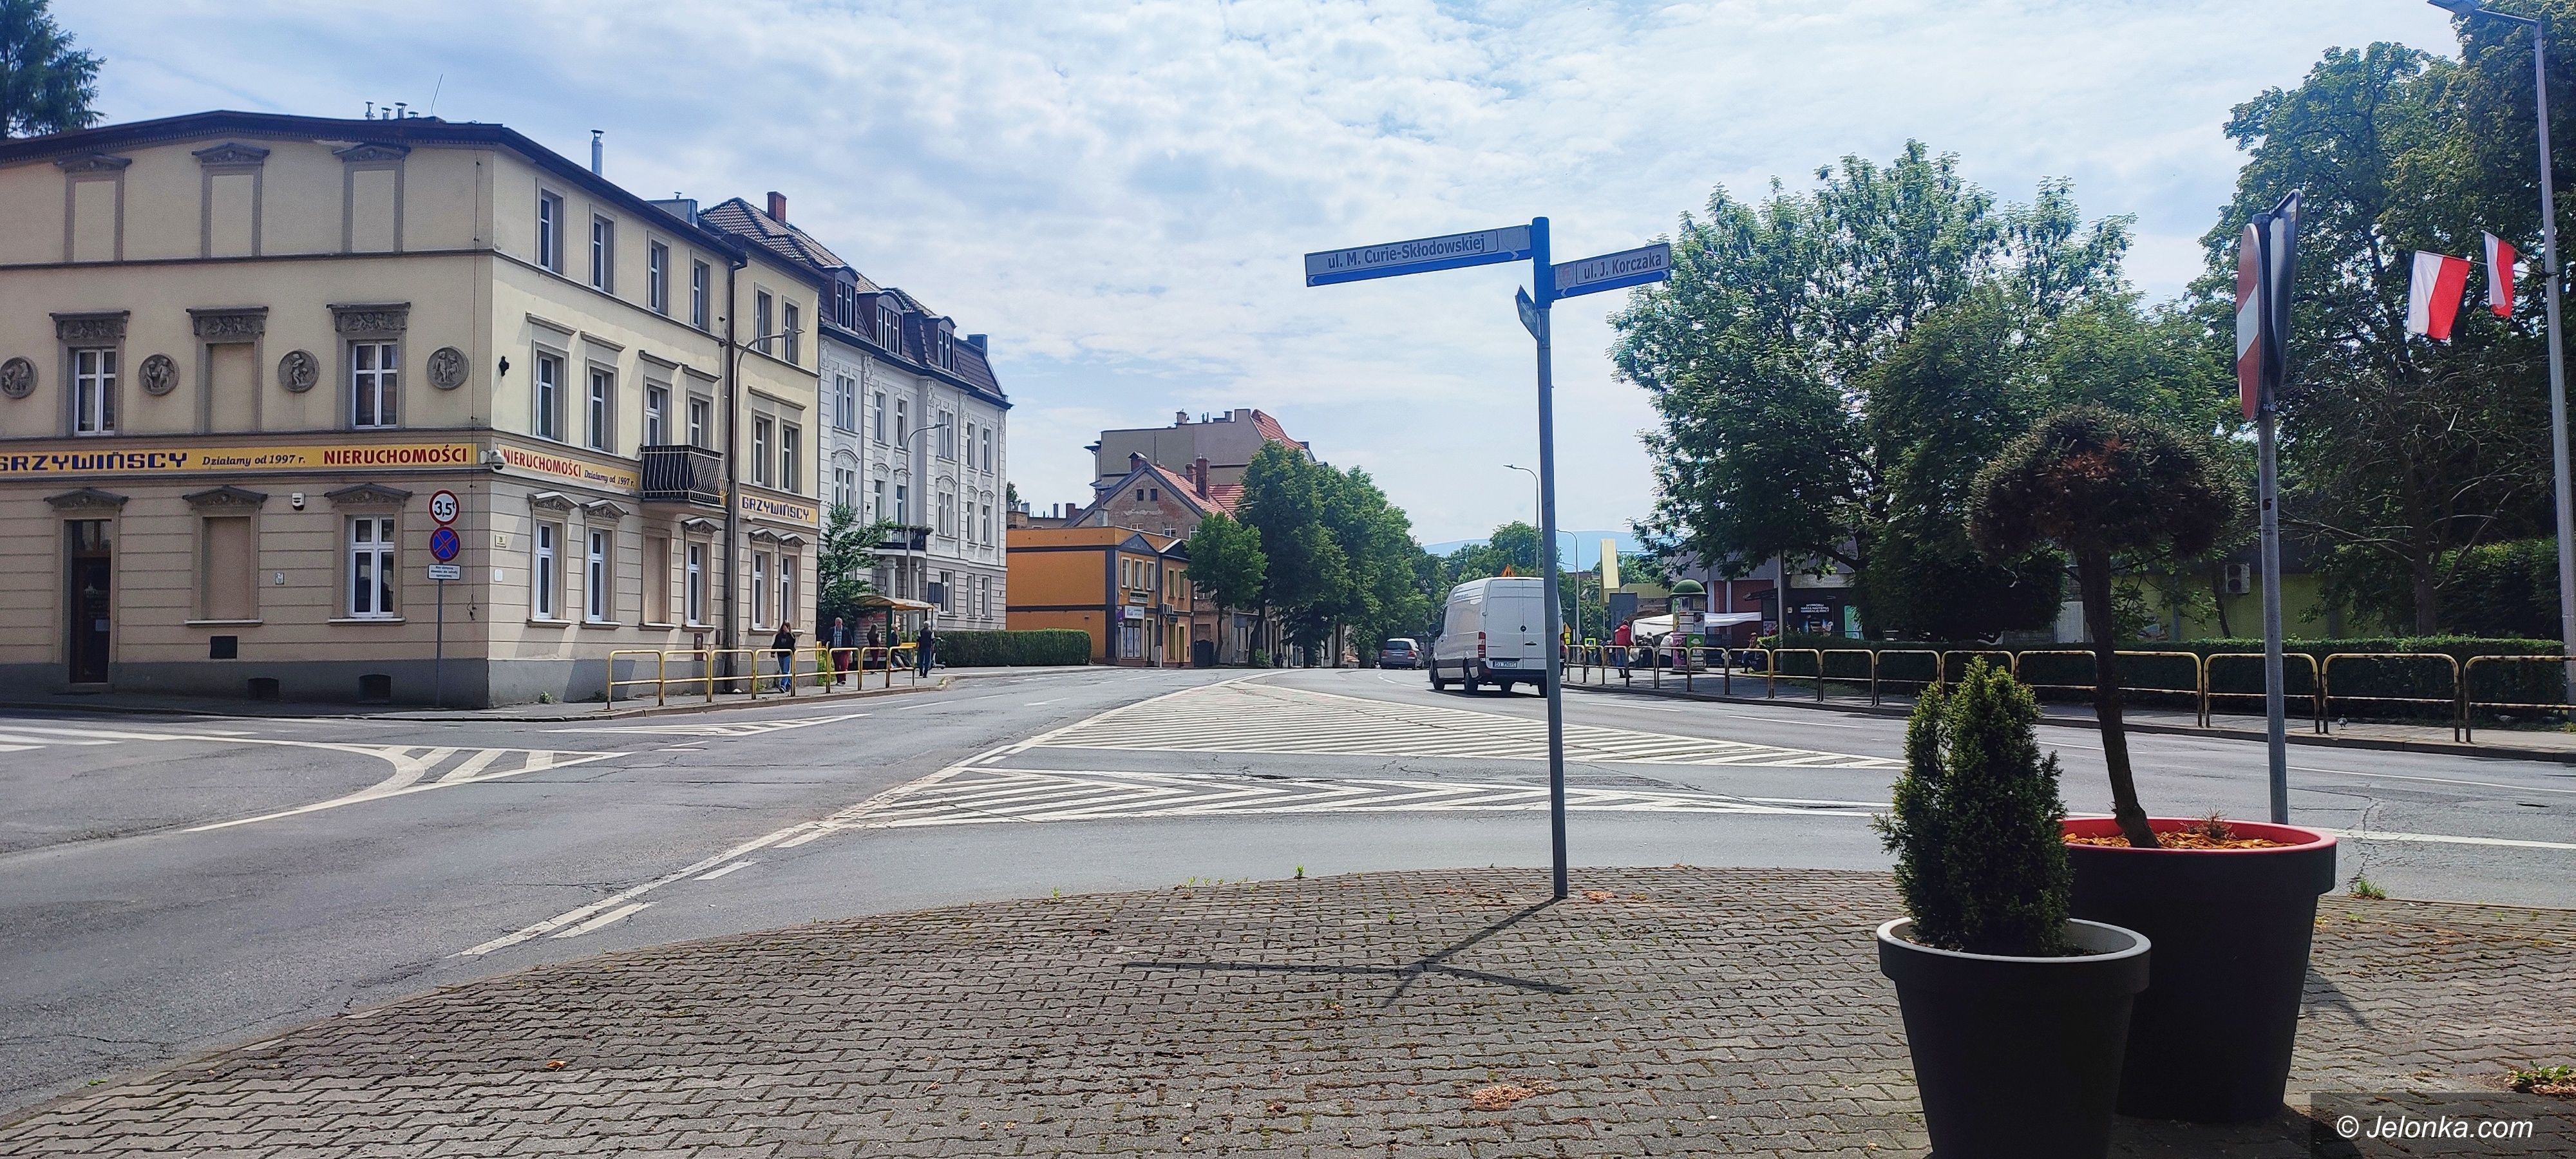 Jelonka.com commencera la restauration de la rue Wolności – restrictions de circulation (mise à jour)